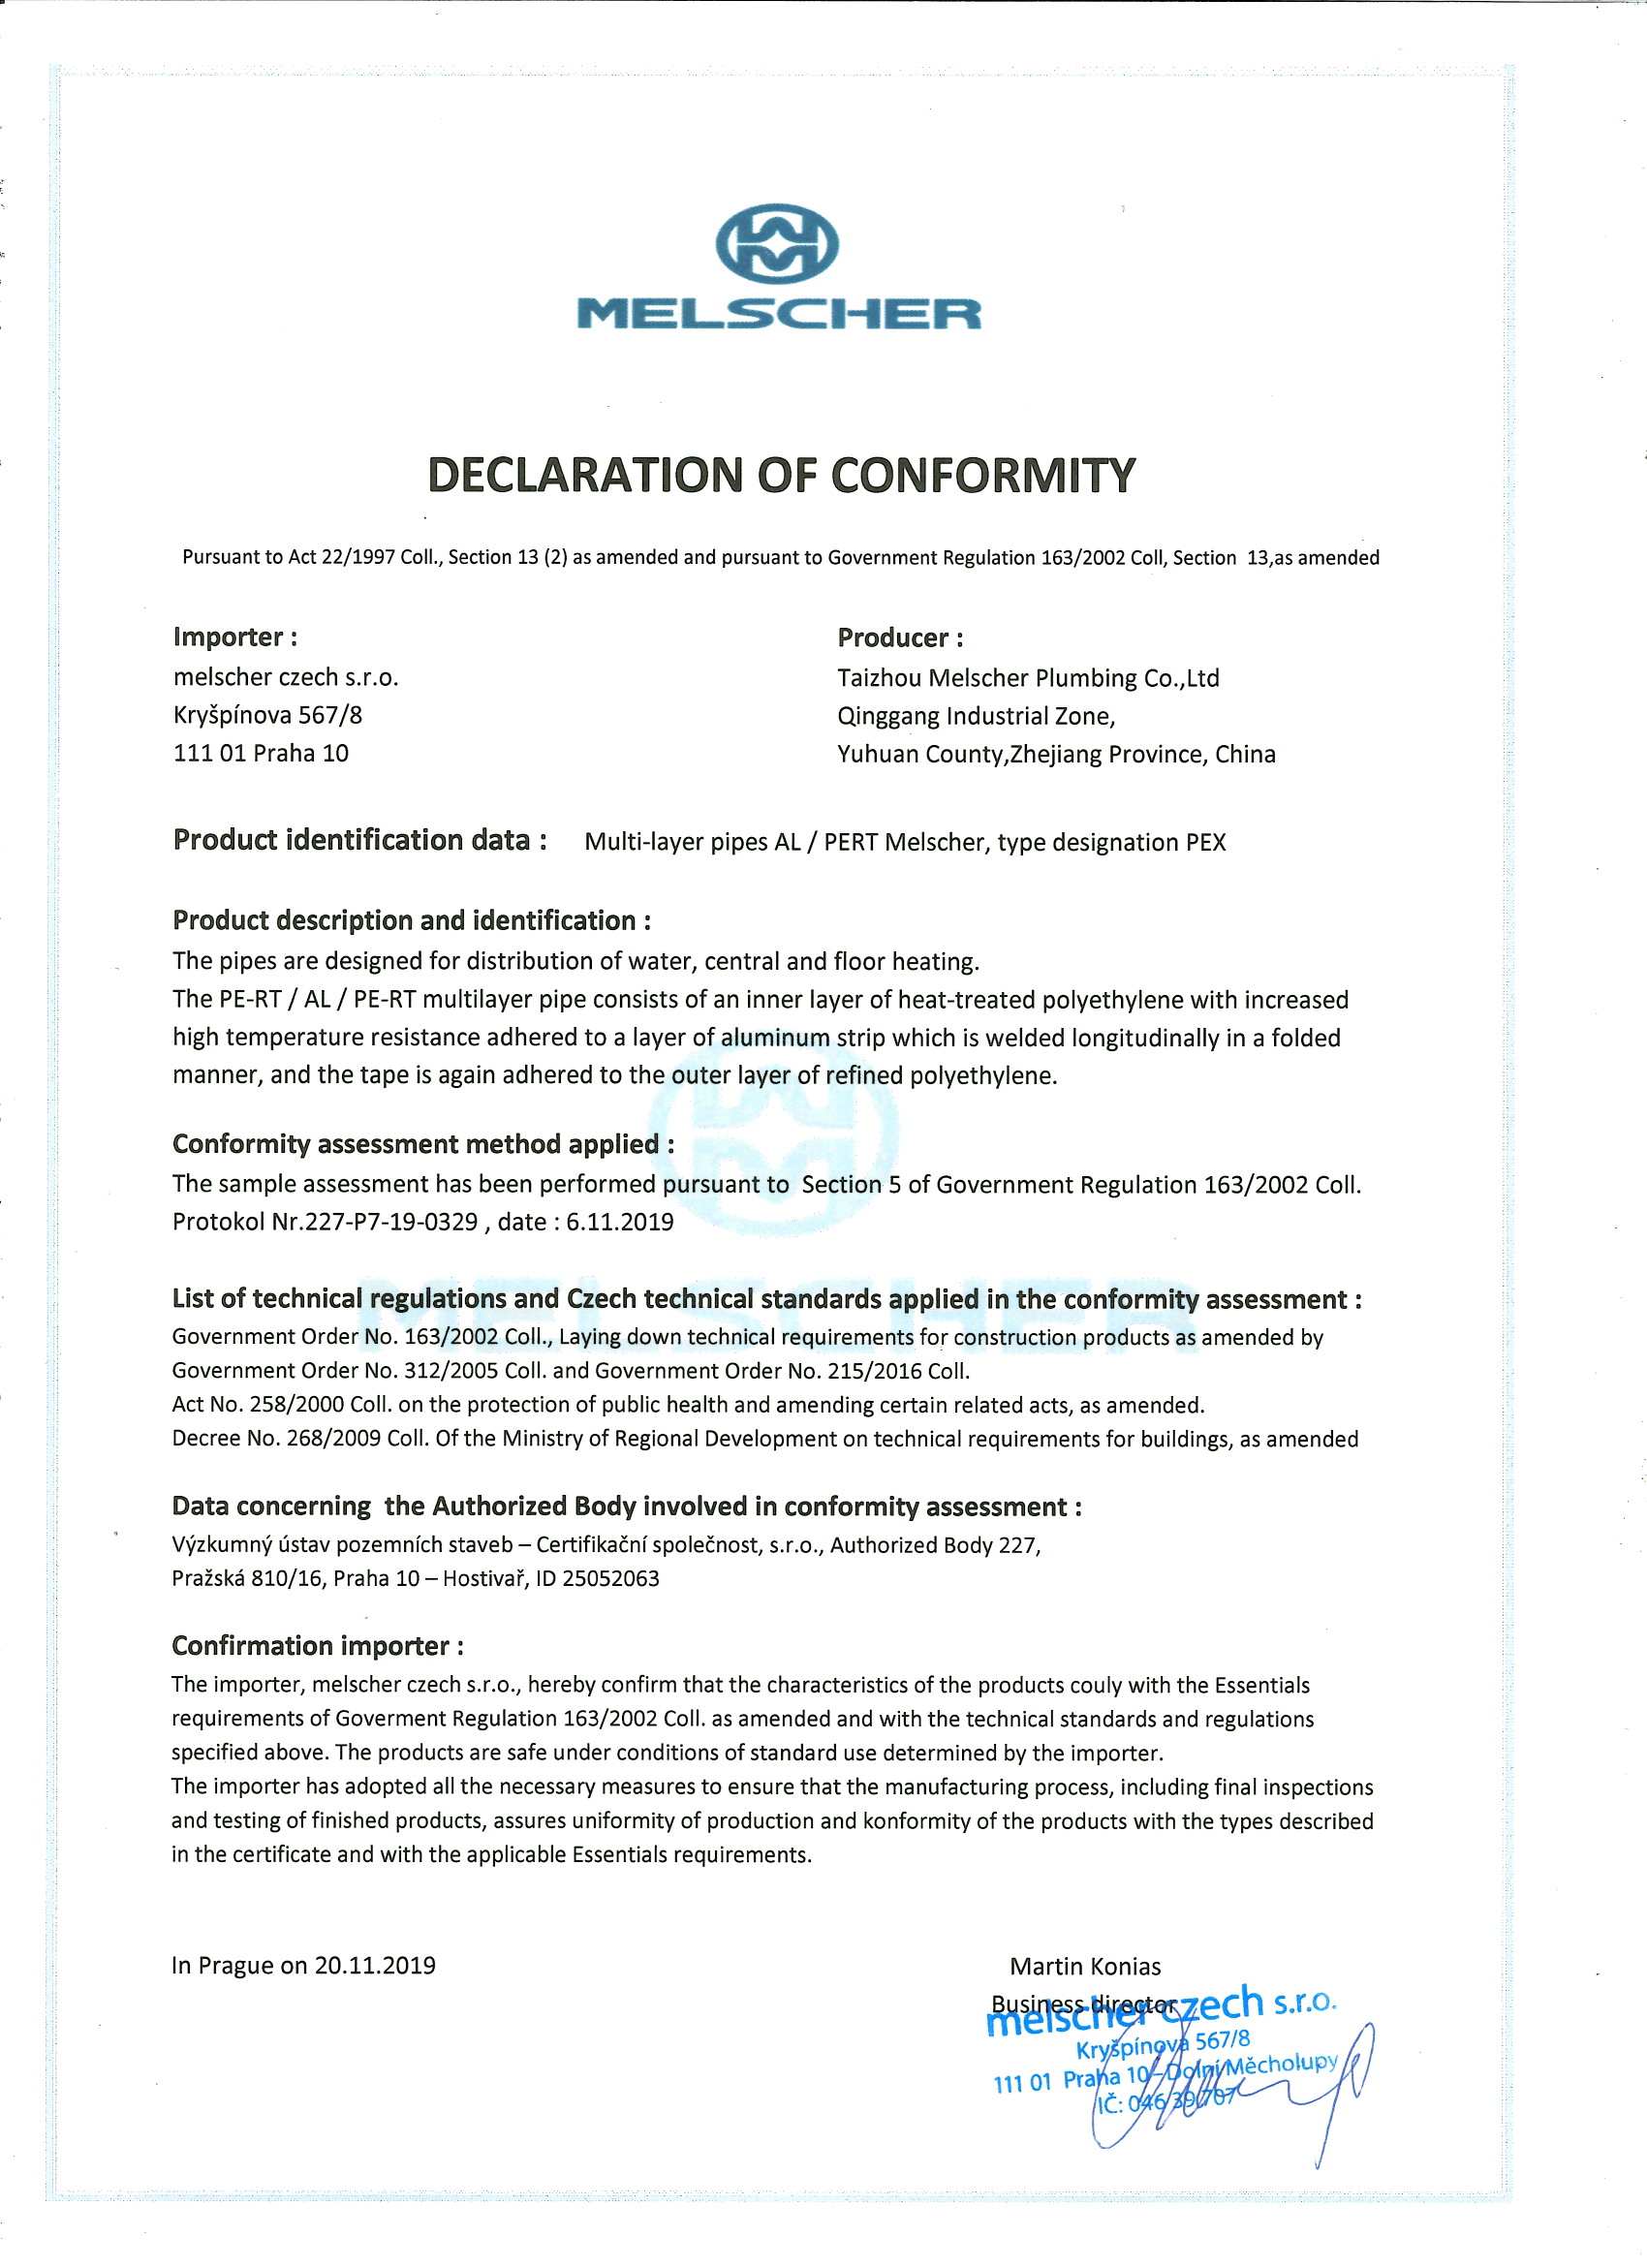 Declaration of conformity - AJ -AL-Pex pipe.jpg